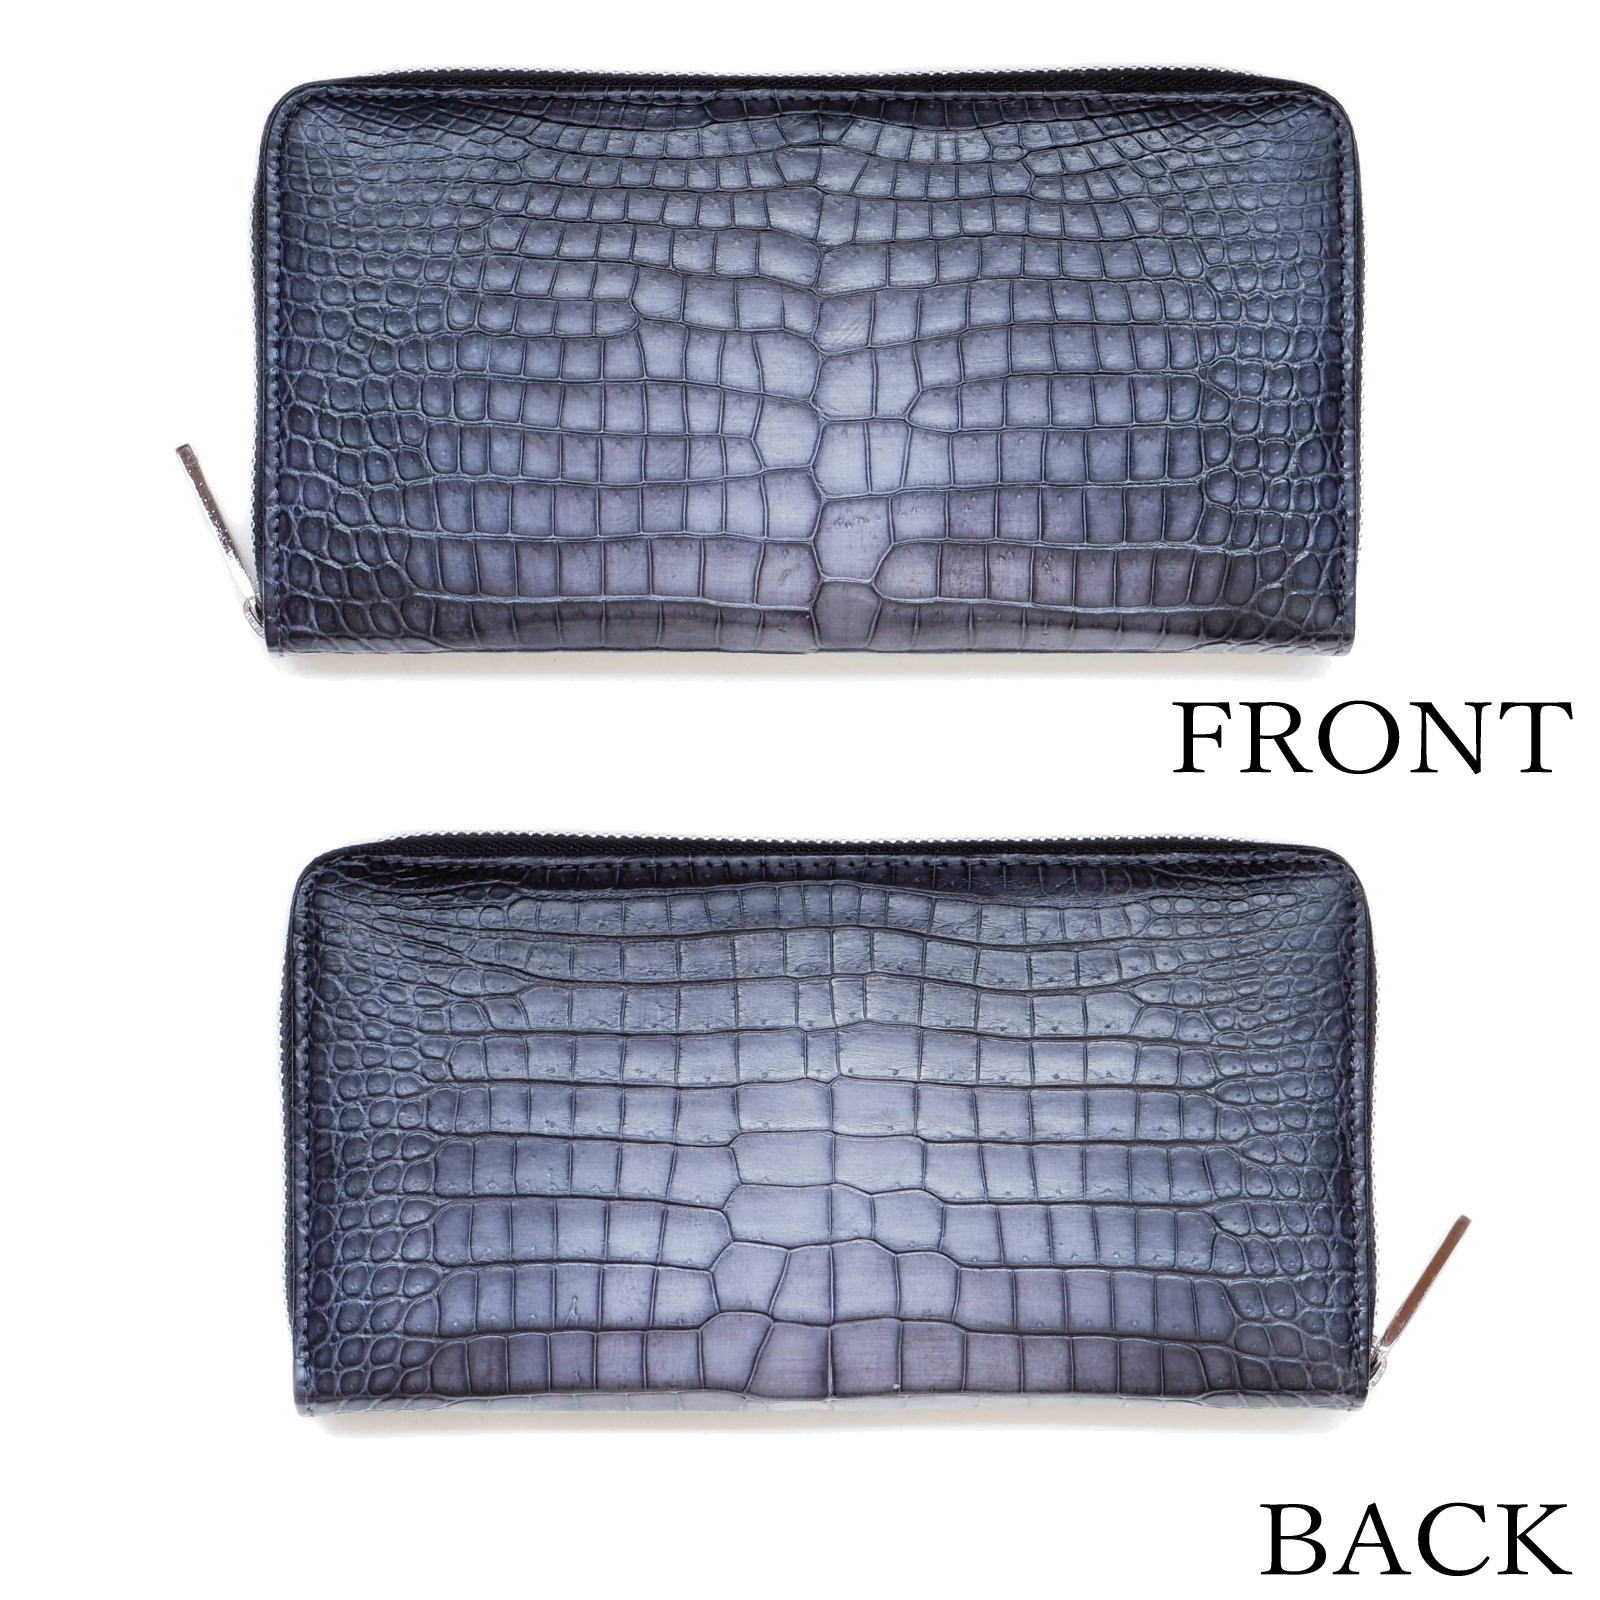 クロコダイルの財布を選ぶ5つのポイント - クロコダイル専門店革芸人 公式ブログ